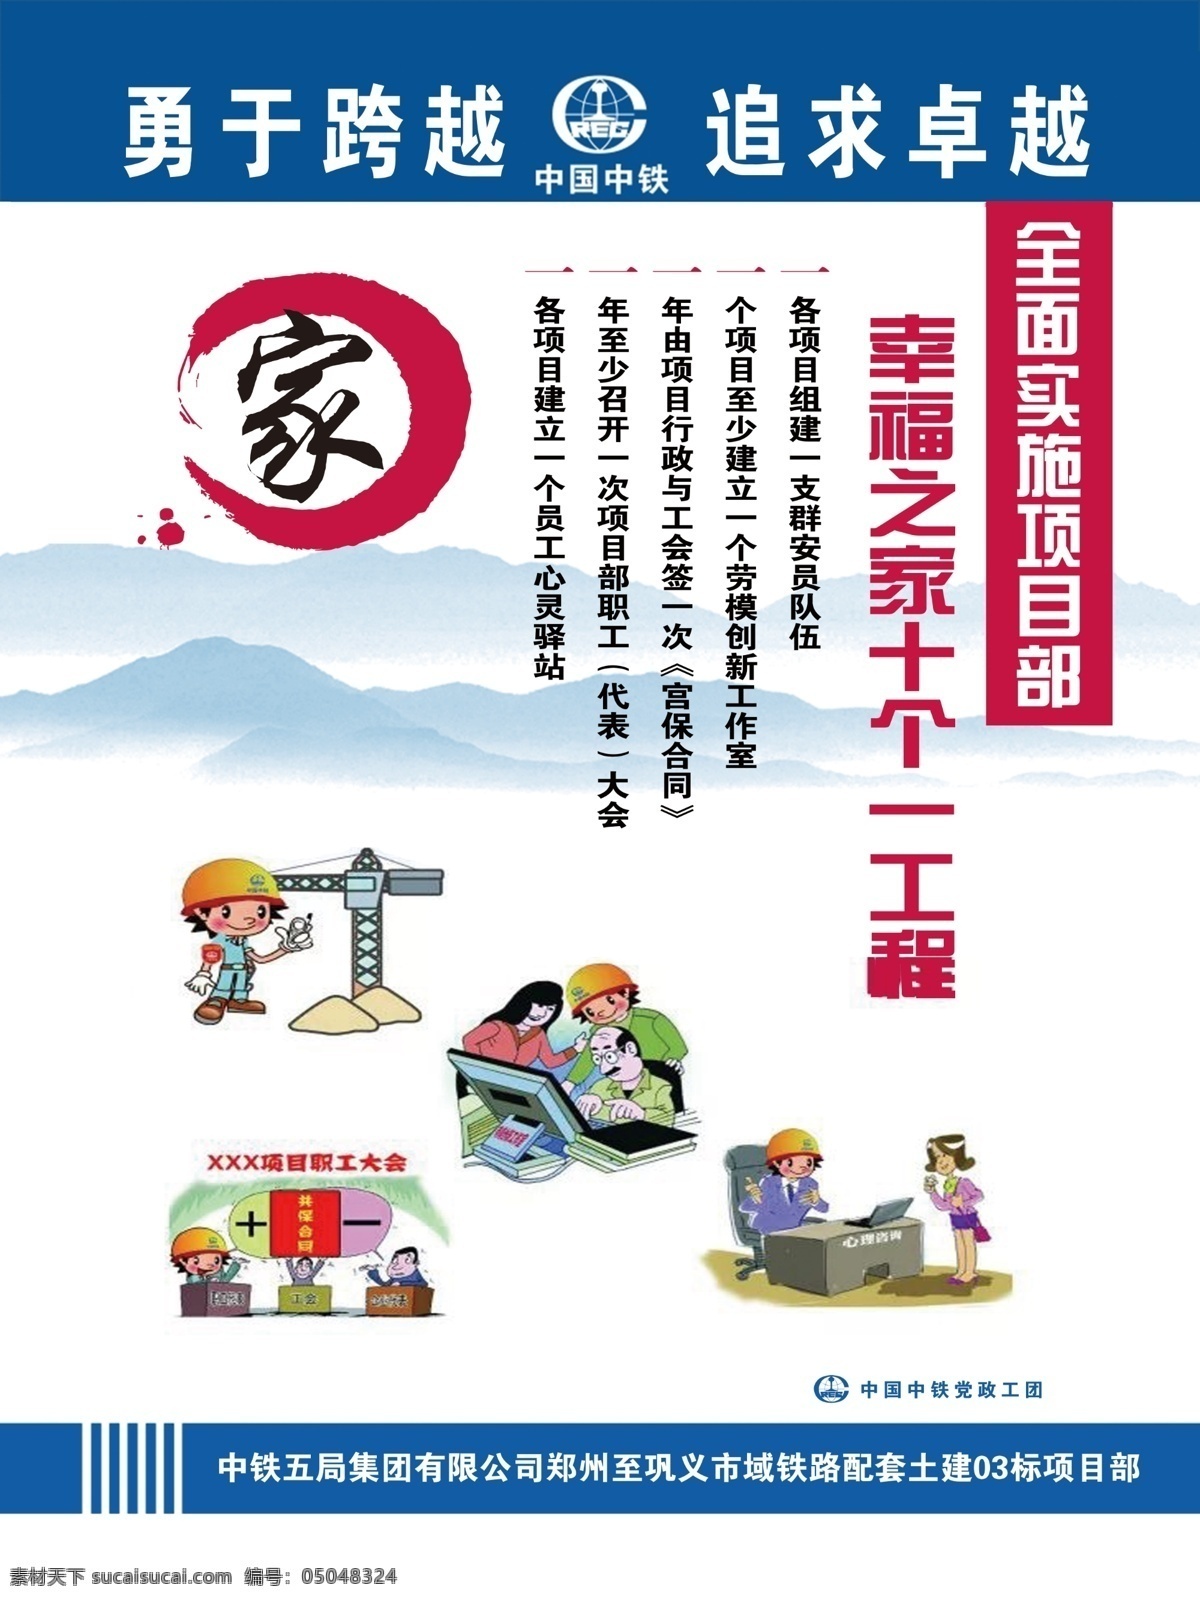 幸福 之家 十 工程 幸福之家 十个一工程 中国中铁 党政工团 勇于跨越 追求卓越 项目部 展板 海报